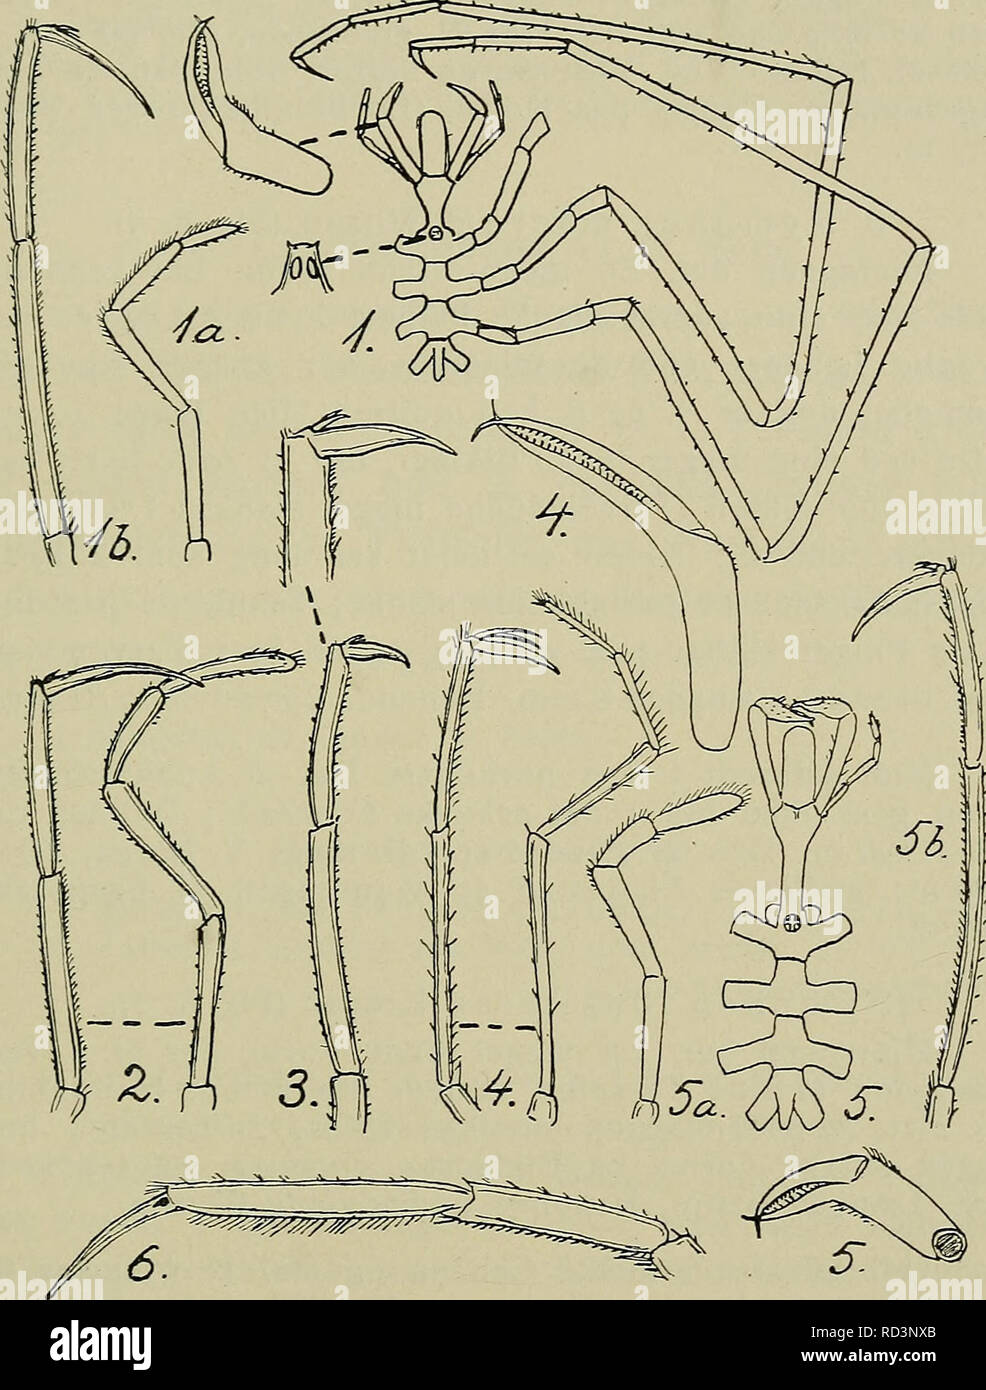 . Danmarks fauna; illustrerede haandbøger over den danske dyreverden... 27 Arter er ofte slaaet sammen (se foreg. Art). Farven rød- gul, Længde 15 mm, Benenes Spændvidde 150 mm.. Fig. 8. Nymphon-Arter med afrundet (ikke tilspidset) Øjetap. 1: N. leptocheles (a: Palpe, b: Spidsen af et Gangben). — 2: N. gracilipes, typisk Form (Palpe og Spidsen af Gangben). — 3: N. stroemi, typisk Form (Spidsen af Gangben). — 4: N. macrum (Palpe og Spidsen af Gangben). —- 5: N. longitarse (fra Ryggen, Klosaks, Palpe og Spidsen af Gangben). — 6: N. longimanum (Spidsen af Gangben). — (Alt efter G. O. Sars 1891, u Stock Photo